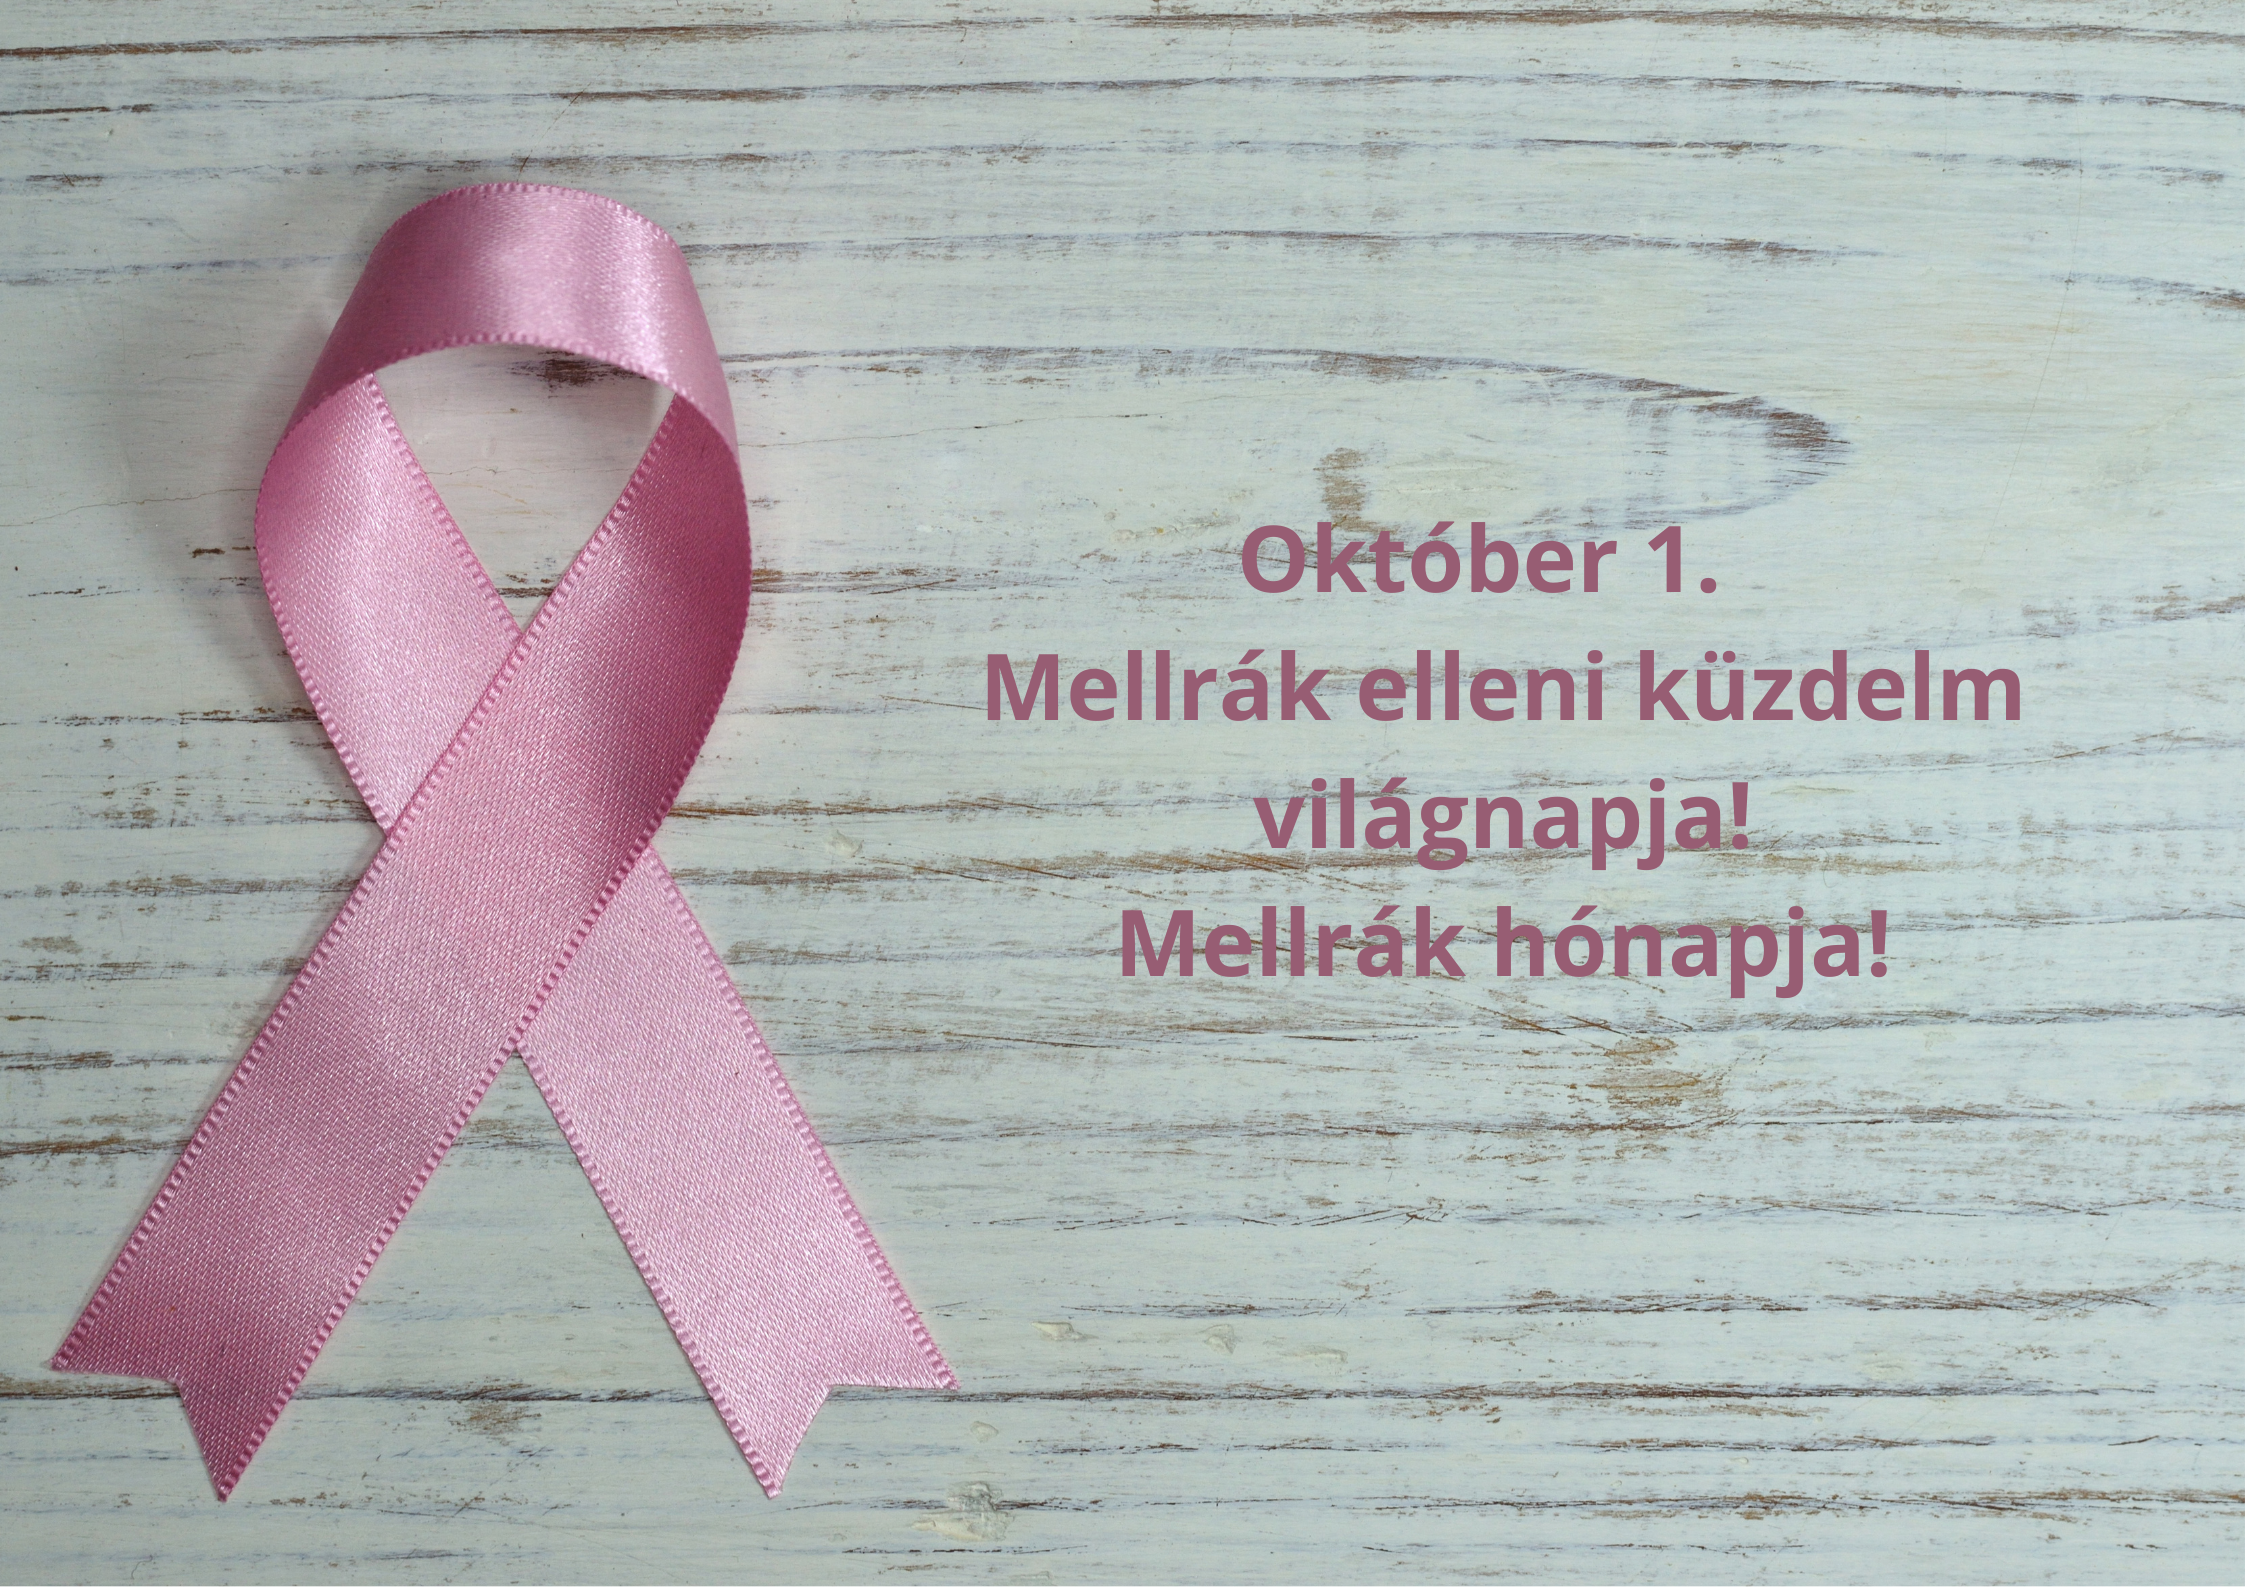 Október 1. a mellrák elleni küzdelem világnapja! Mellrák Hónapja!